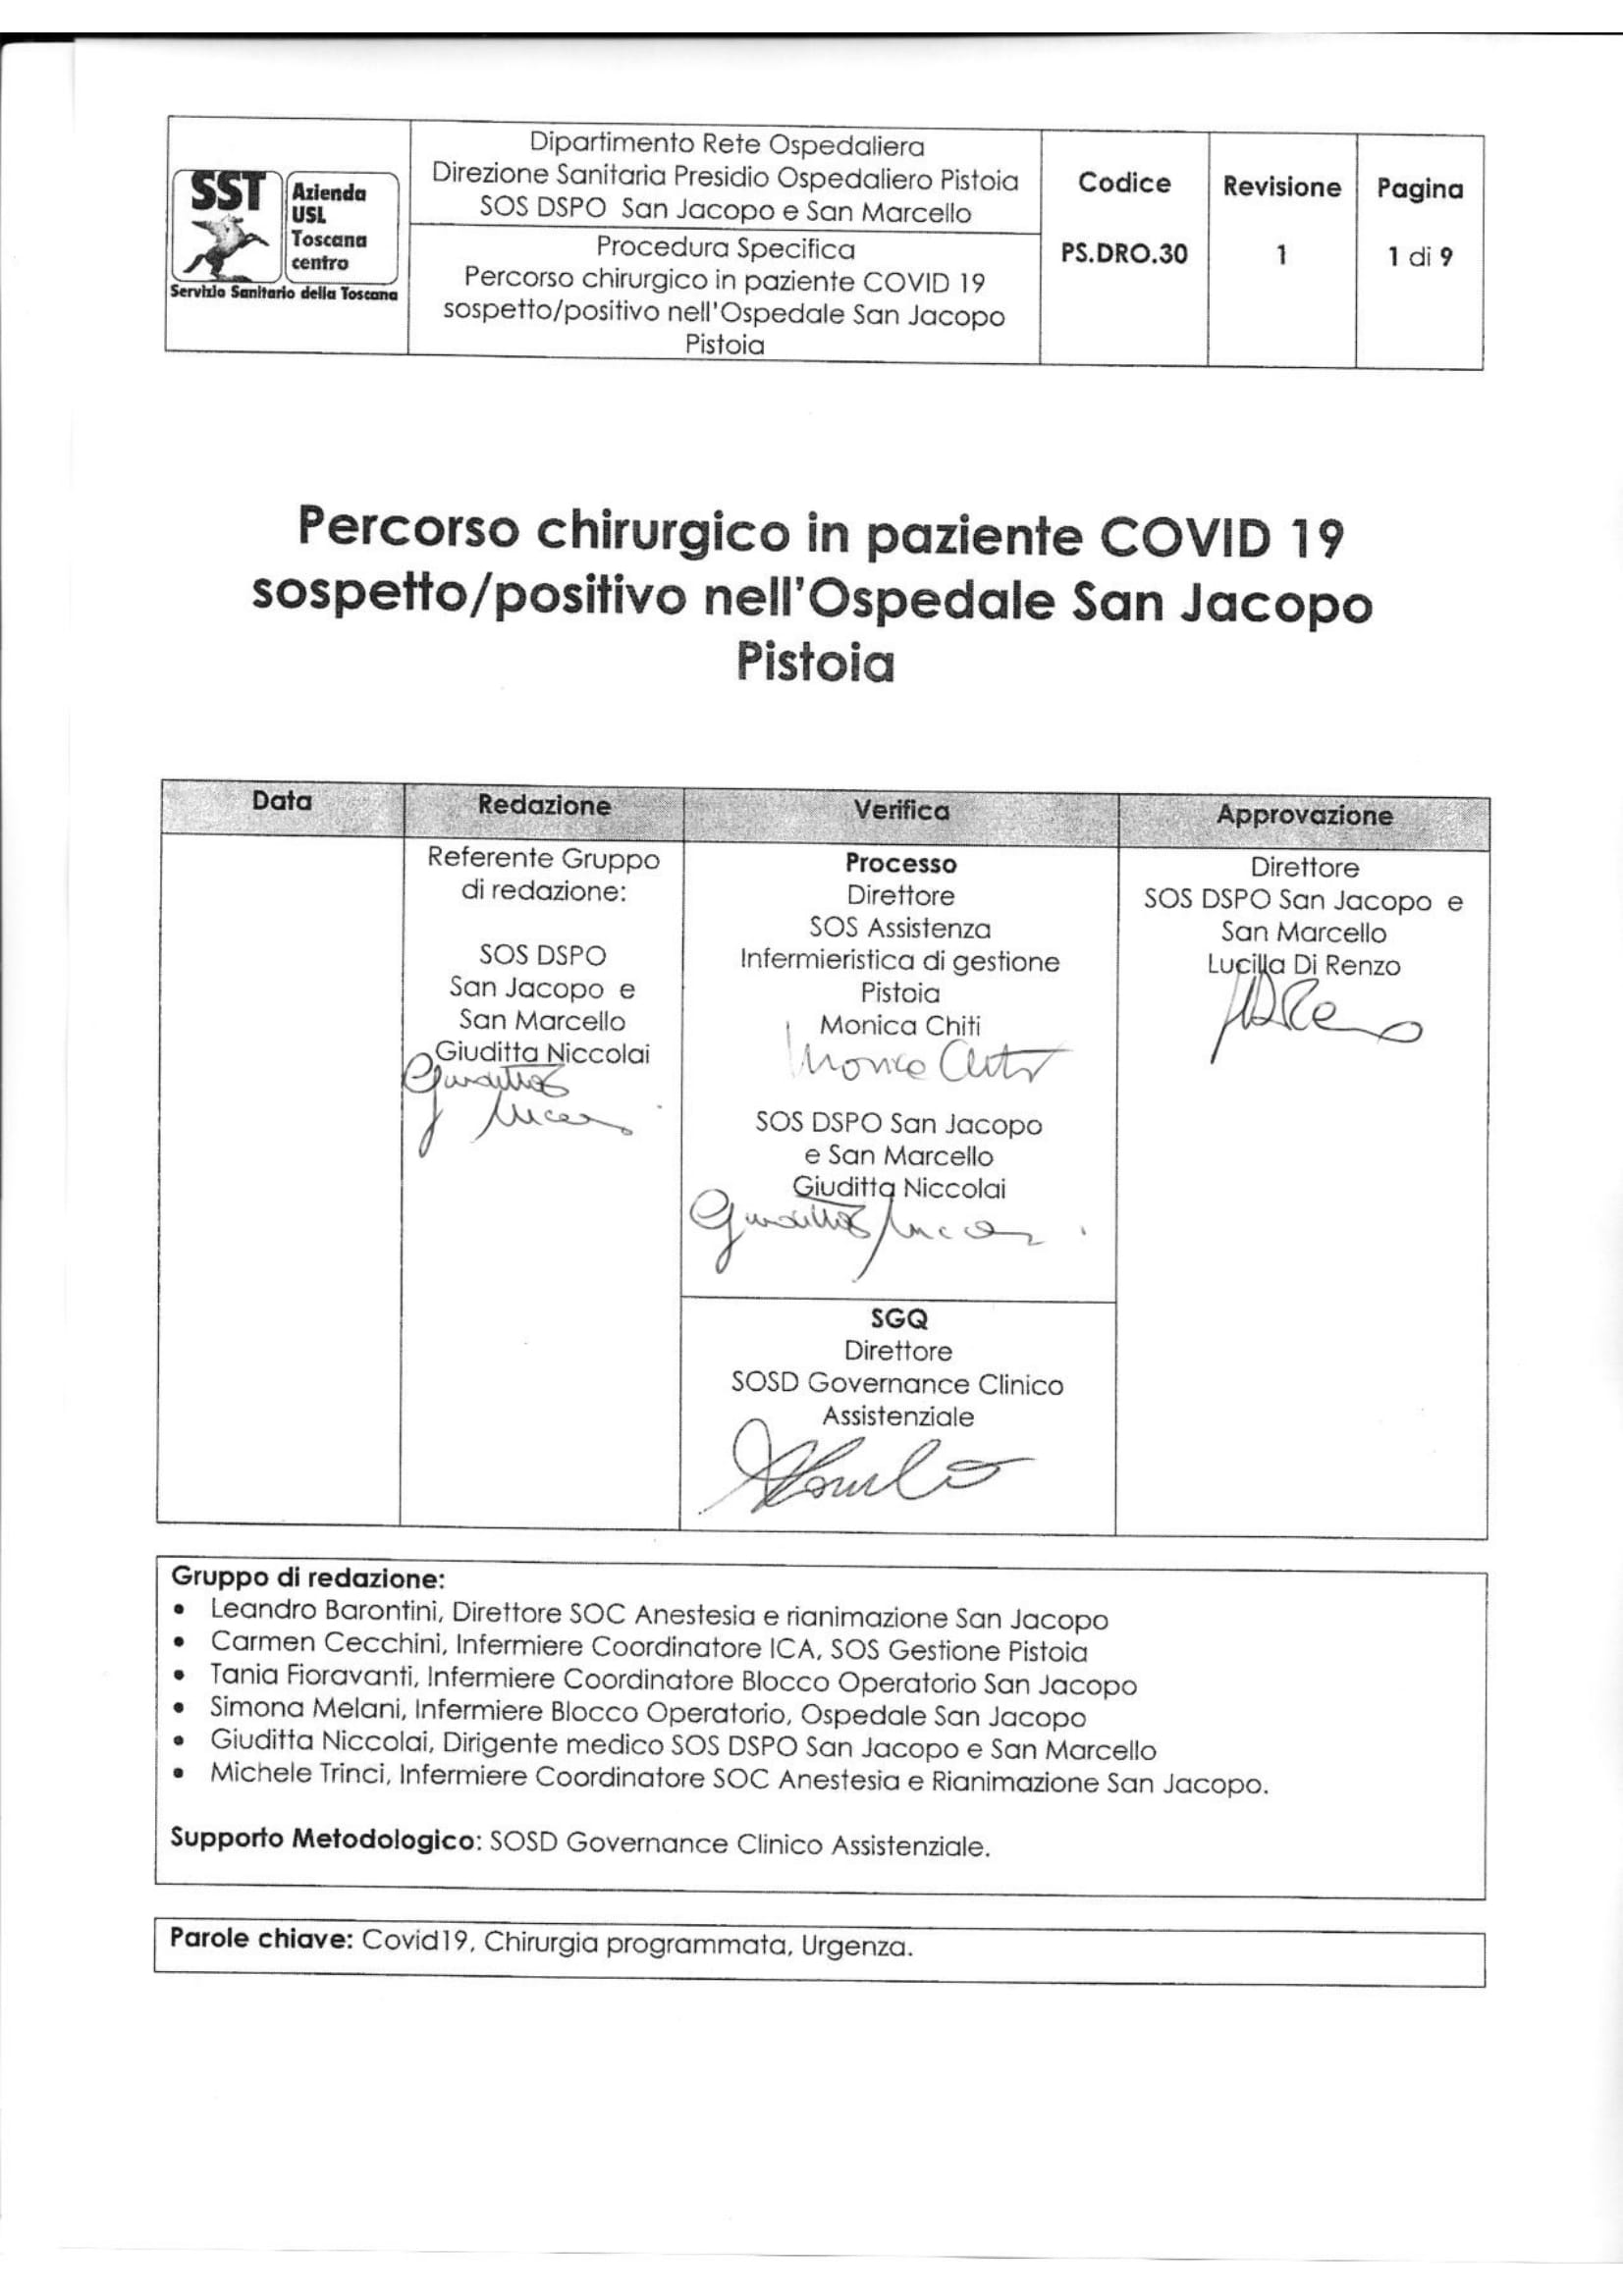 PS.DRO.30 rev.1 Percorso chirurgico in paziente COVID-19 sospetto/positivo nell’Ospedale San Jacopo Pistoia